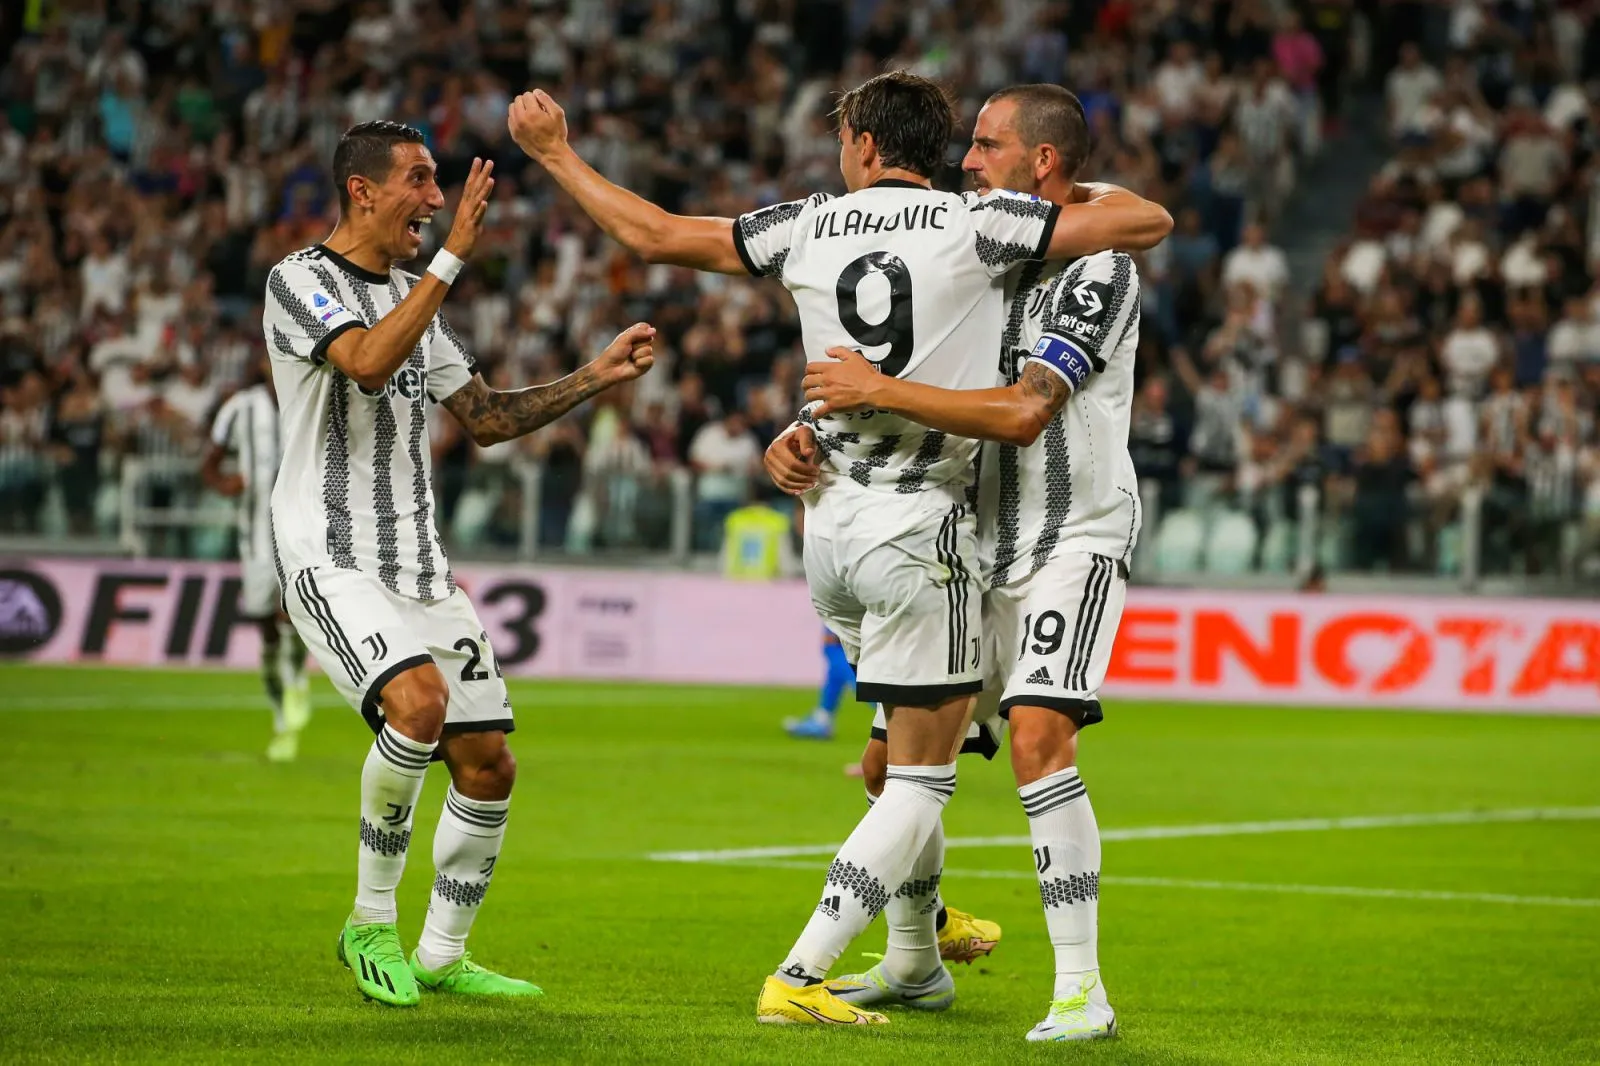 Pronostic Juventus Torino : Analyse, cotes et prono du match de Serie A